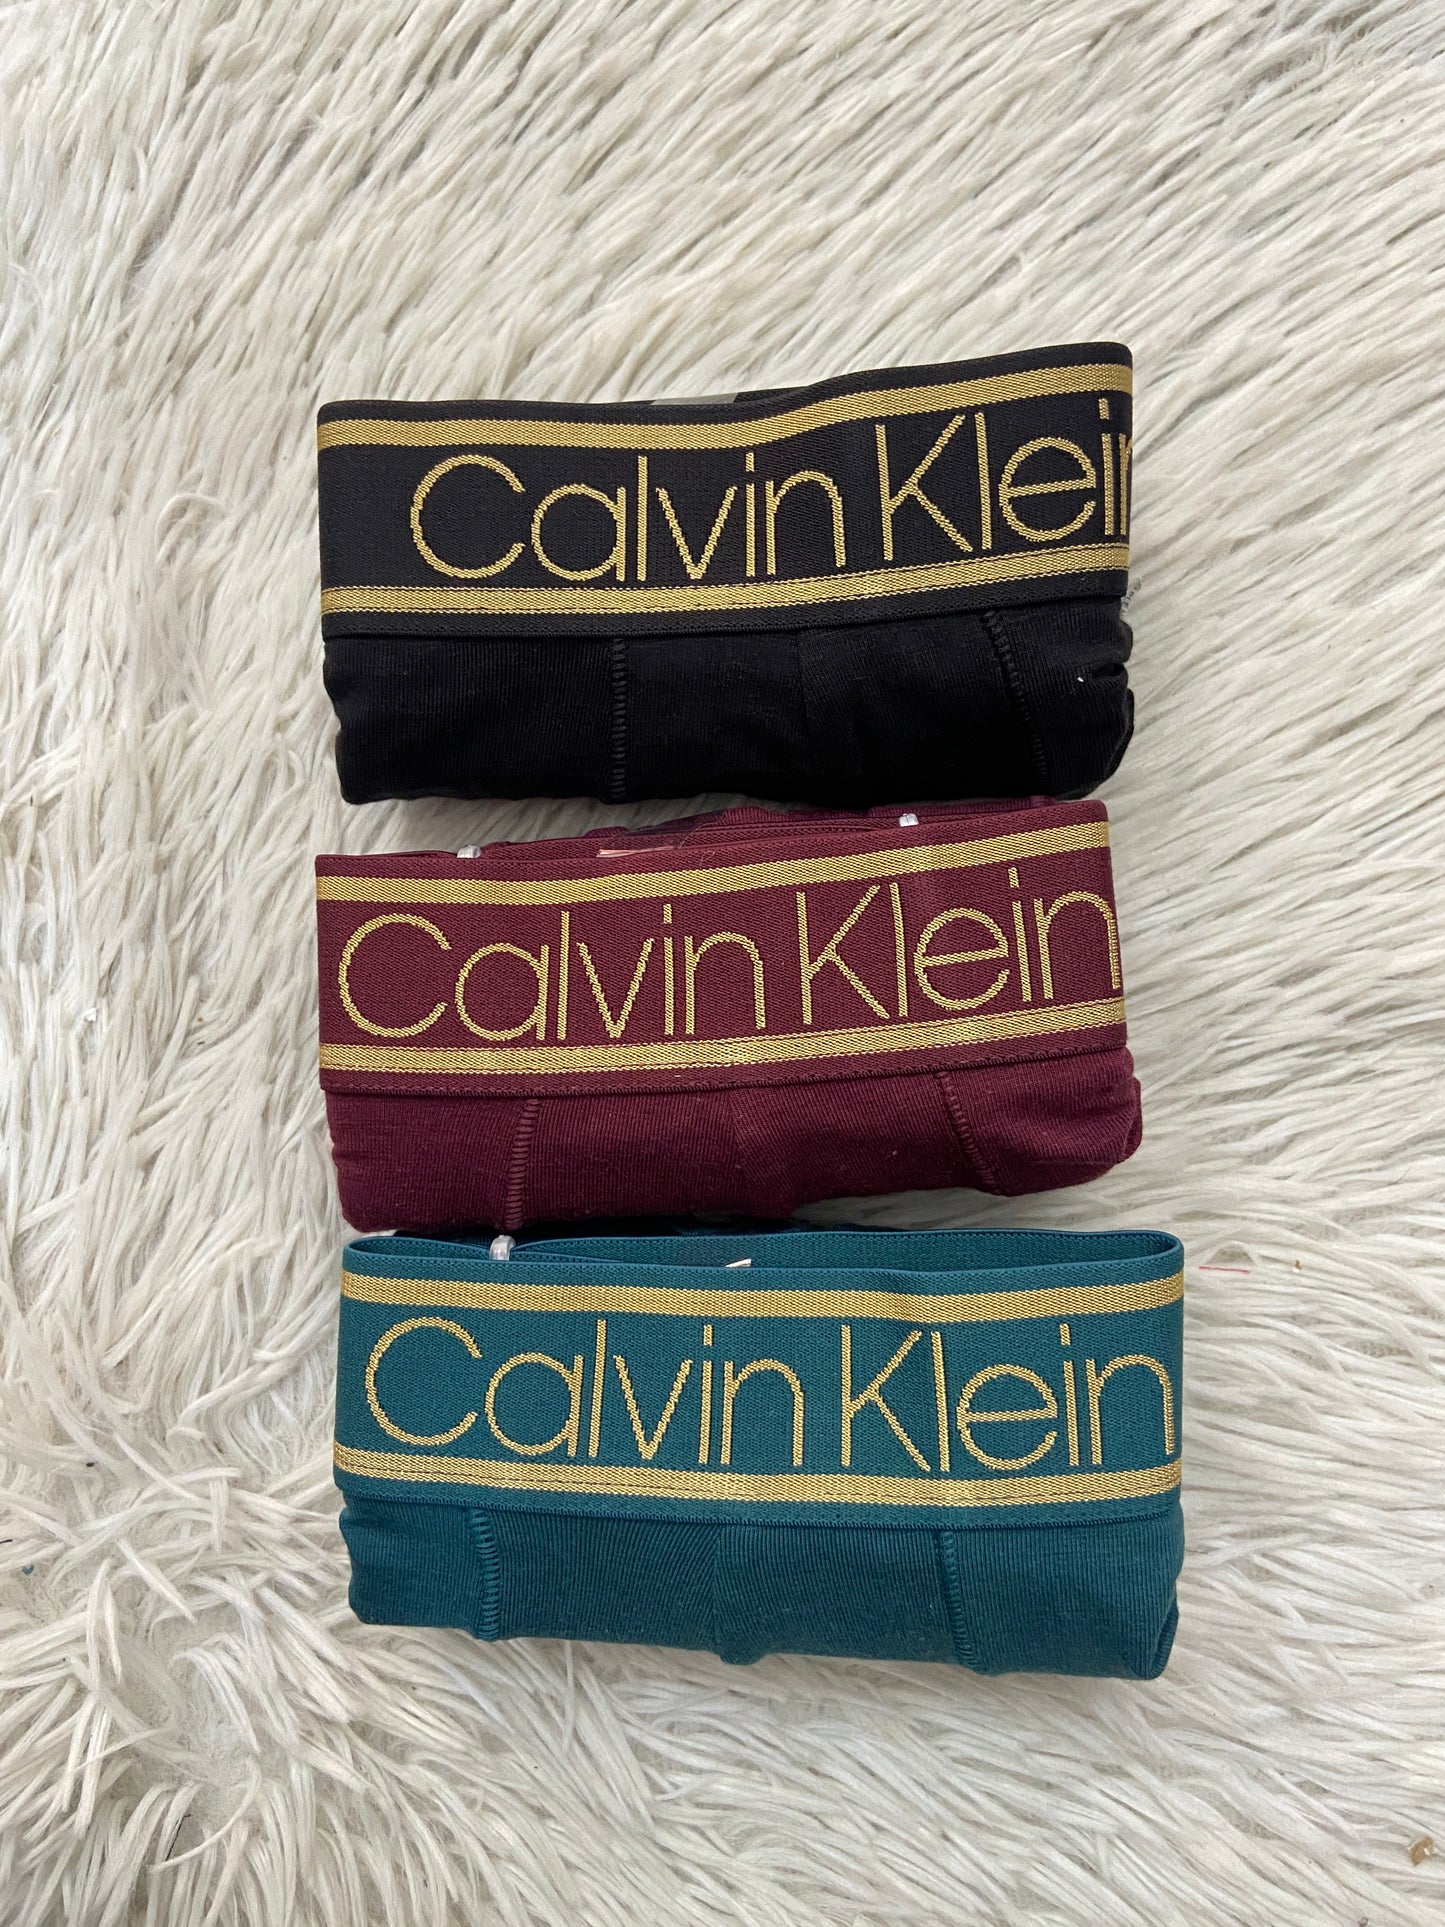 Set de Boxer Calvin Klein original, pack de 3, verde, rojo y negro